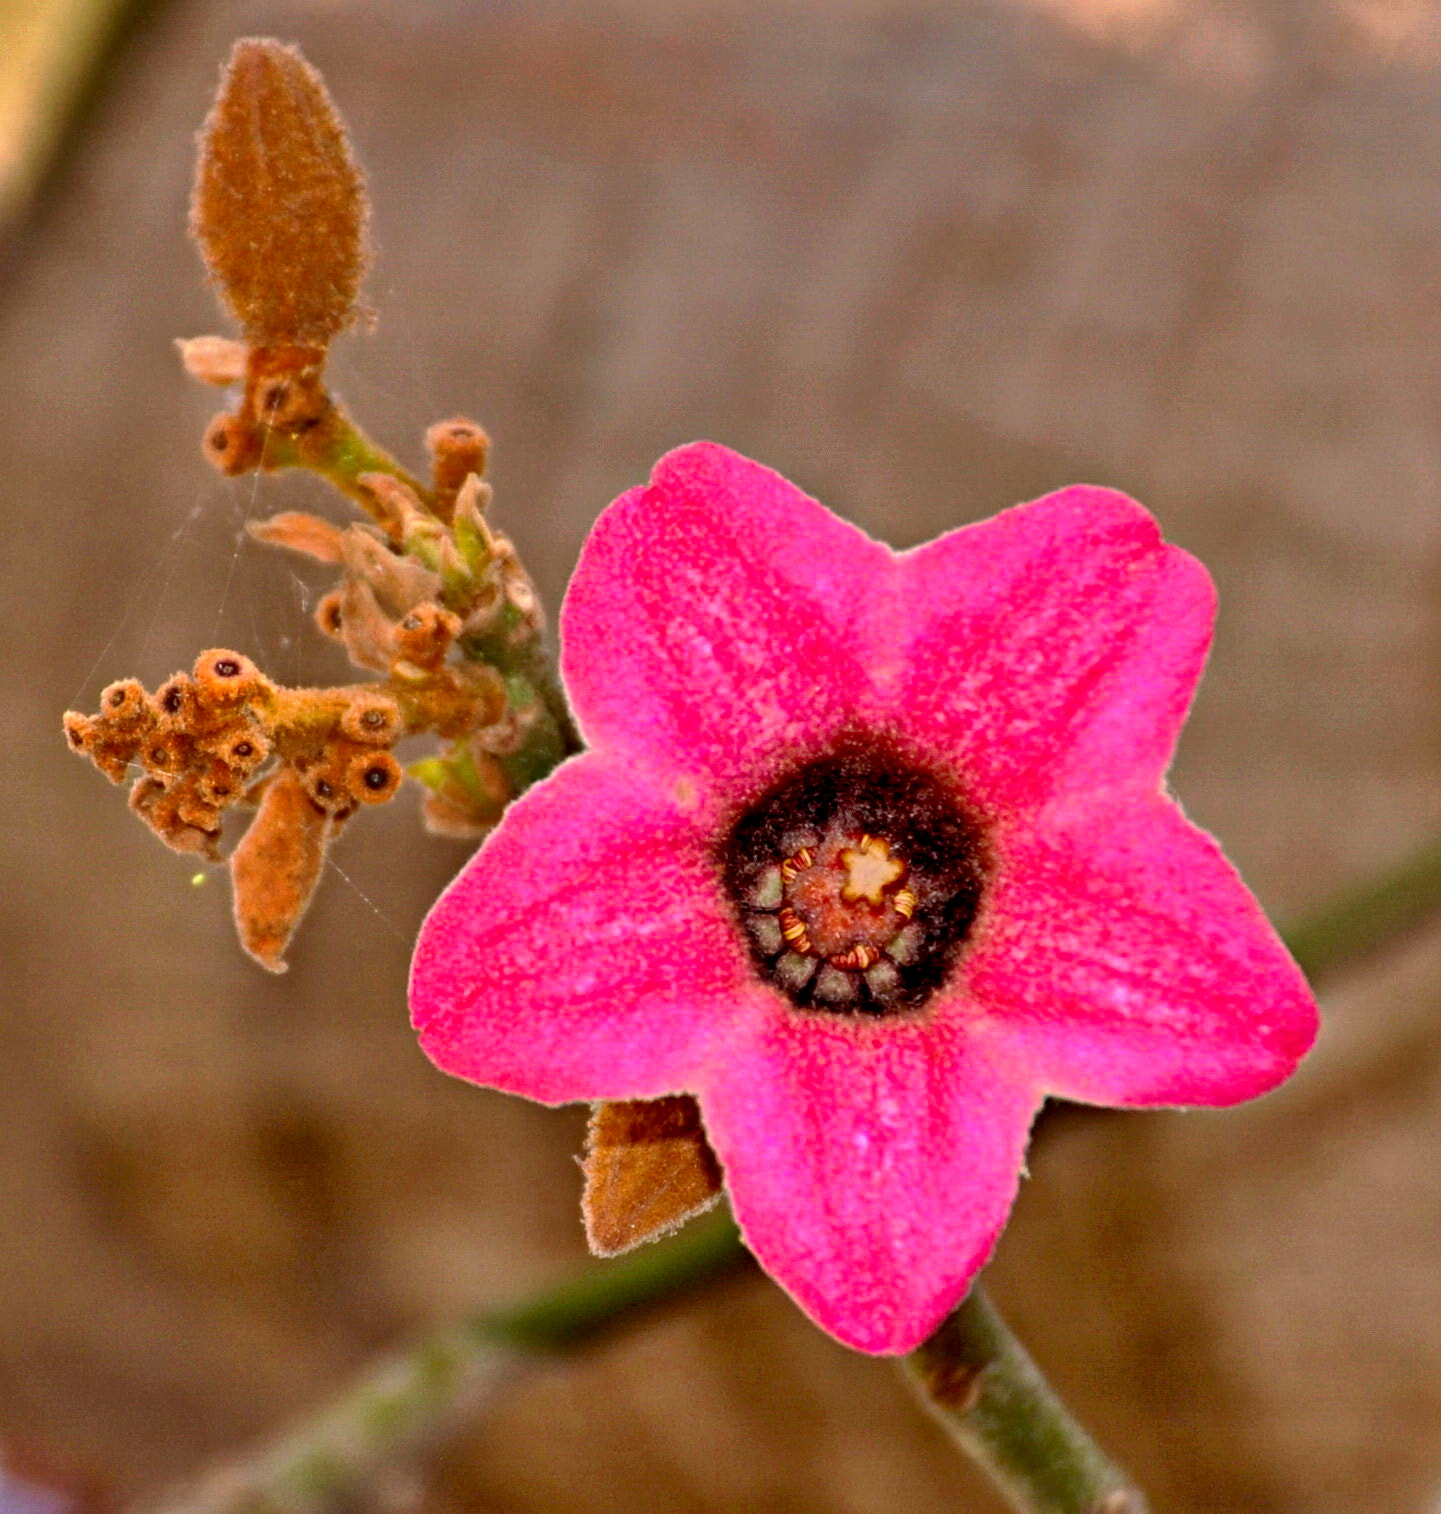 Nikon D90 + Nikon AF-S DX Nikkor 18-140mm F3.5-5.6G ED VR sample photo. Pink cactus flower four photography